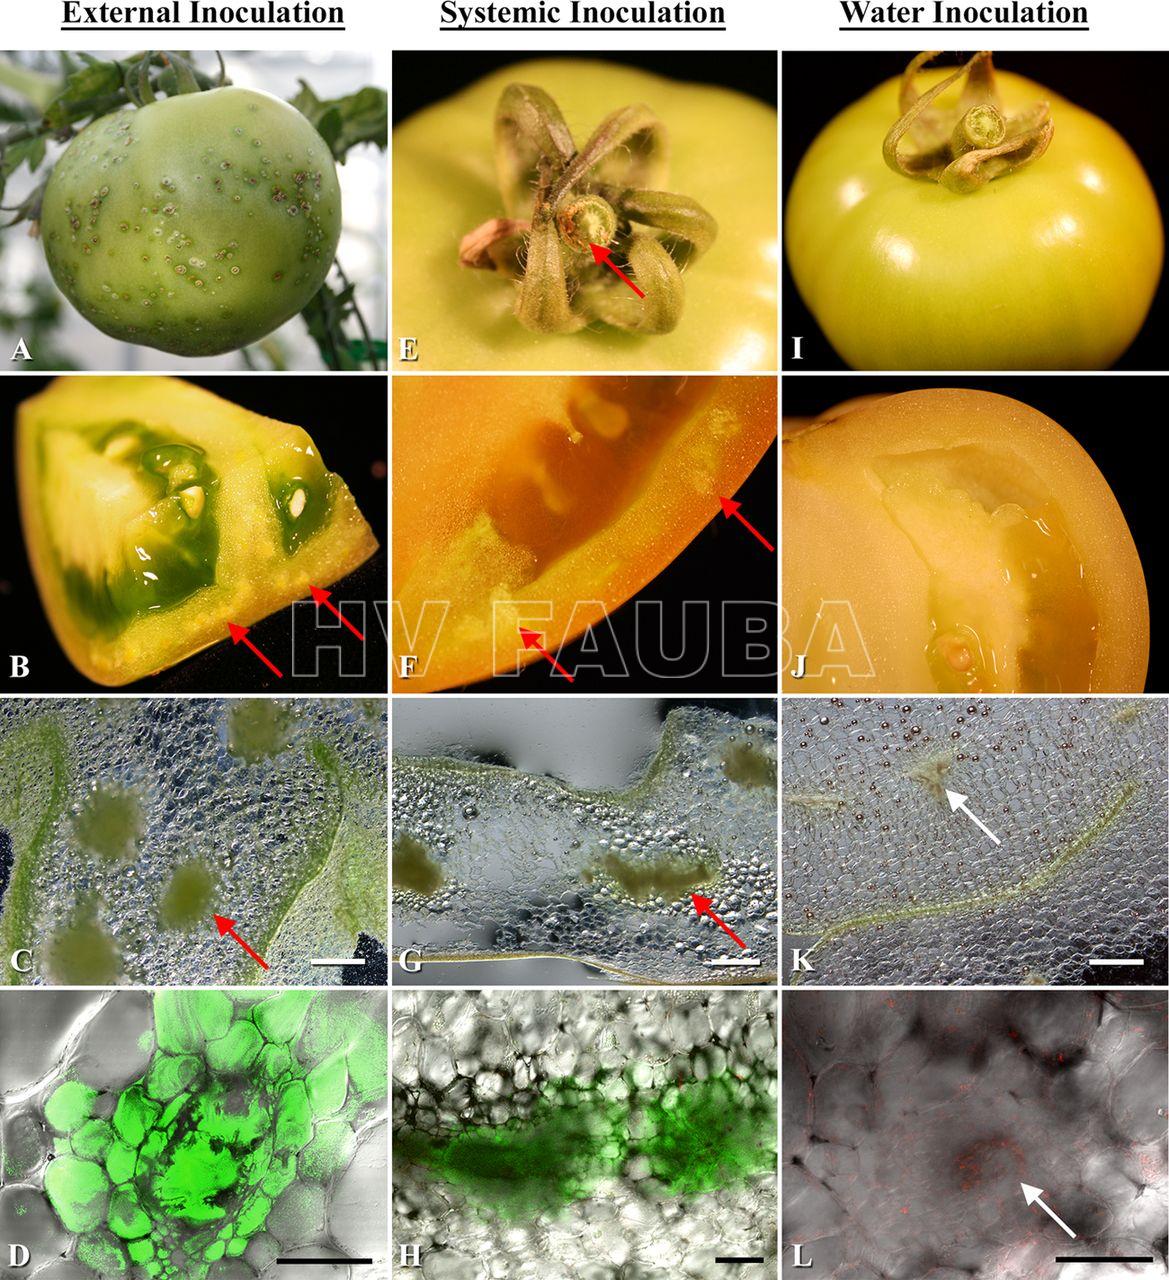 1112/5000
Colonización de frutos de tomate por C. michiganensis subsp. michiganensis con diferentes métodos de inoculación. (A a D) Inoculación externa. (A) Lesiones en el exocarpio del tomate; (B y C) fuerte colonización bacteriana de haces vasculares de pericarpio; (D) imagen confocal del haz vascular mencionado en B y C. (E a H) Inoculación sistémica. (E) Fruto con haces vasculares de pedicelo descoloridos; (F y G) colonización bacteriana intensa de haces vasculares de pericarpio; (H) haces vasculares colonizados por C. michiganensis subsp. michiganensis; (I a L) Inoculación con agua. (I) Control negativo sin lesiones en el fruto o decoloración de haces  vasculares del pedicelo; (J a L) Control negativo de los haces vasculares del pericarpio. Las flechas rojas indican una fuerte colonización vascular por C. michiganensis subsp. michiganensis. Las flechas blancas indican haces vasculares no colonizados. Barras de escala: 1 mm en los paneles C, G y K; 200 μm en los paneles D y H; 100 μm en panel L.
Autor: Tancos et al., 2013.